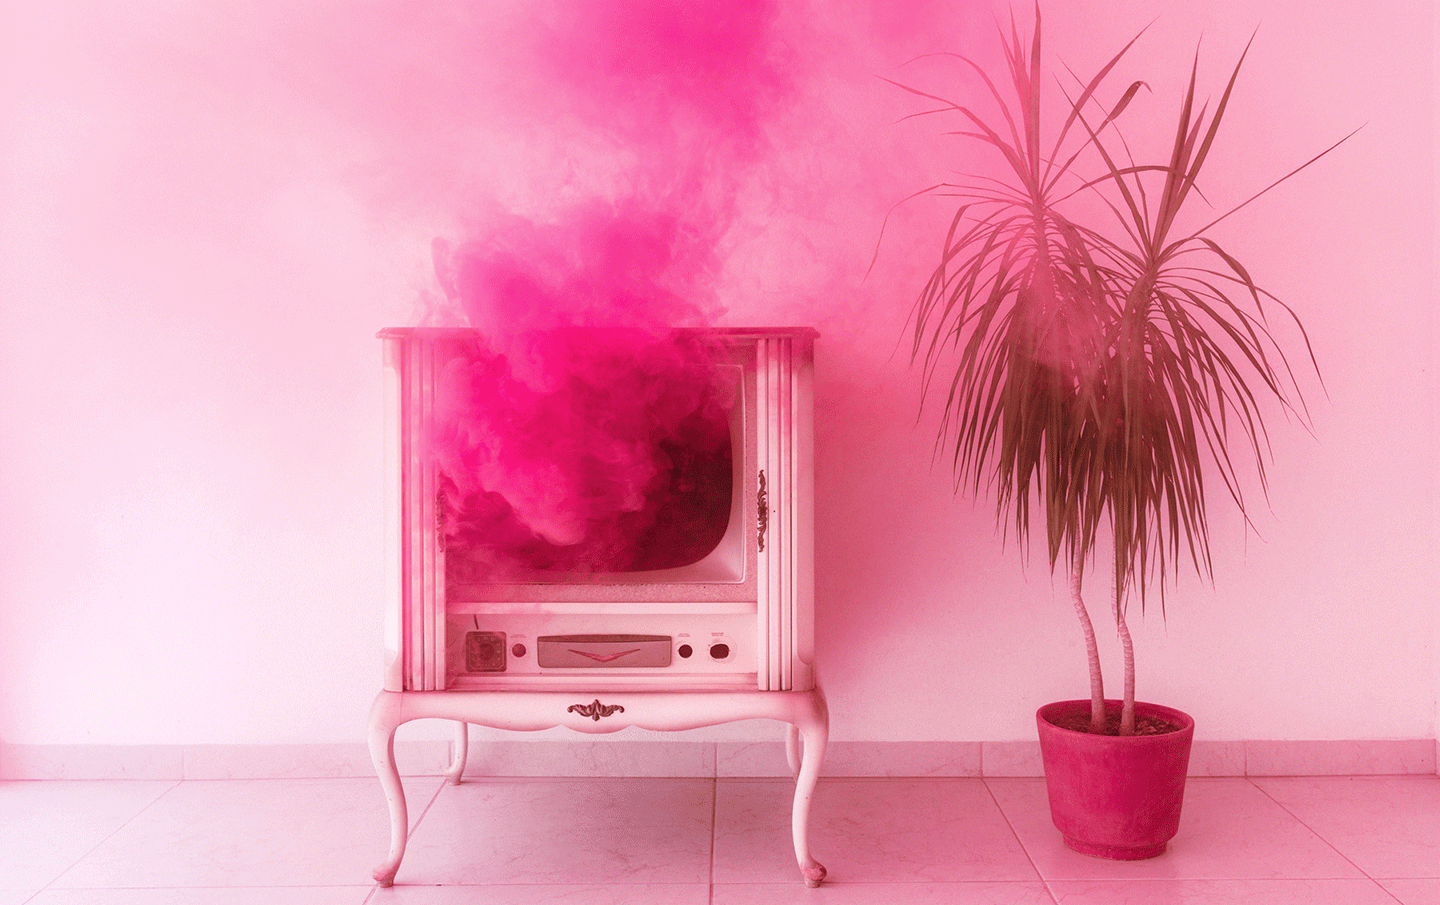 Ein pinkfarbiges Zimmer mit pinken Möbeln. Es stehen eine Palme und ein qualmender Fernseher im Raum.